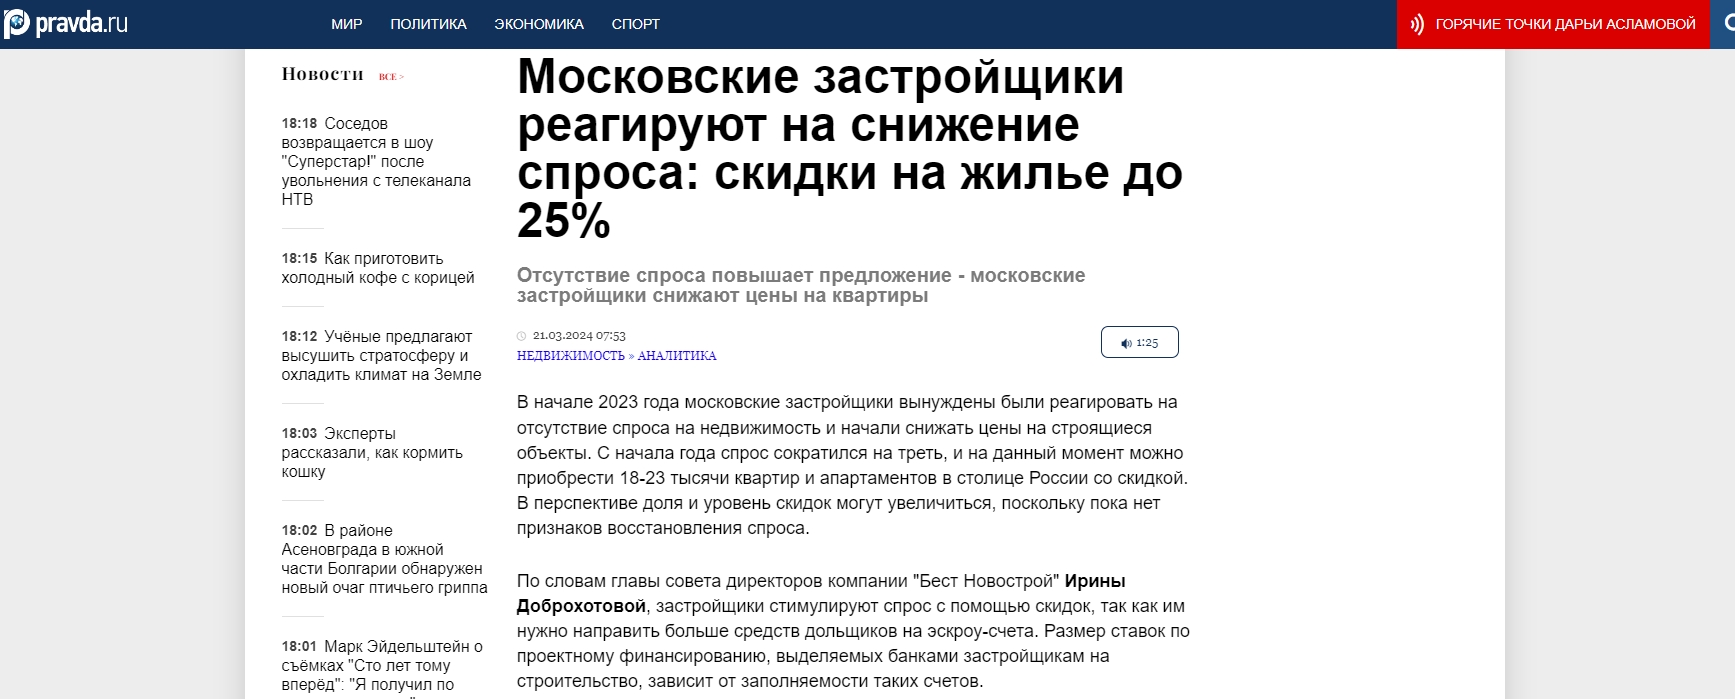 Московские застройщики реагируют на снижение спроса: скидки на жилье до 25%